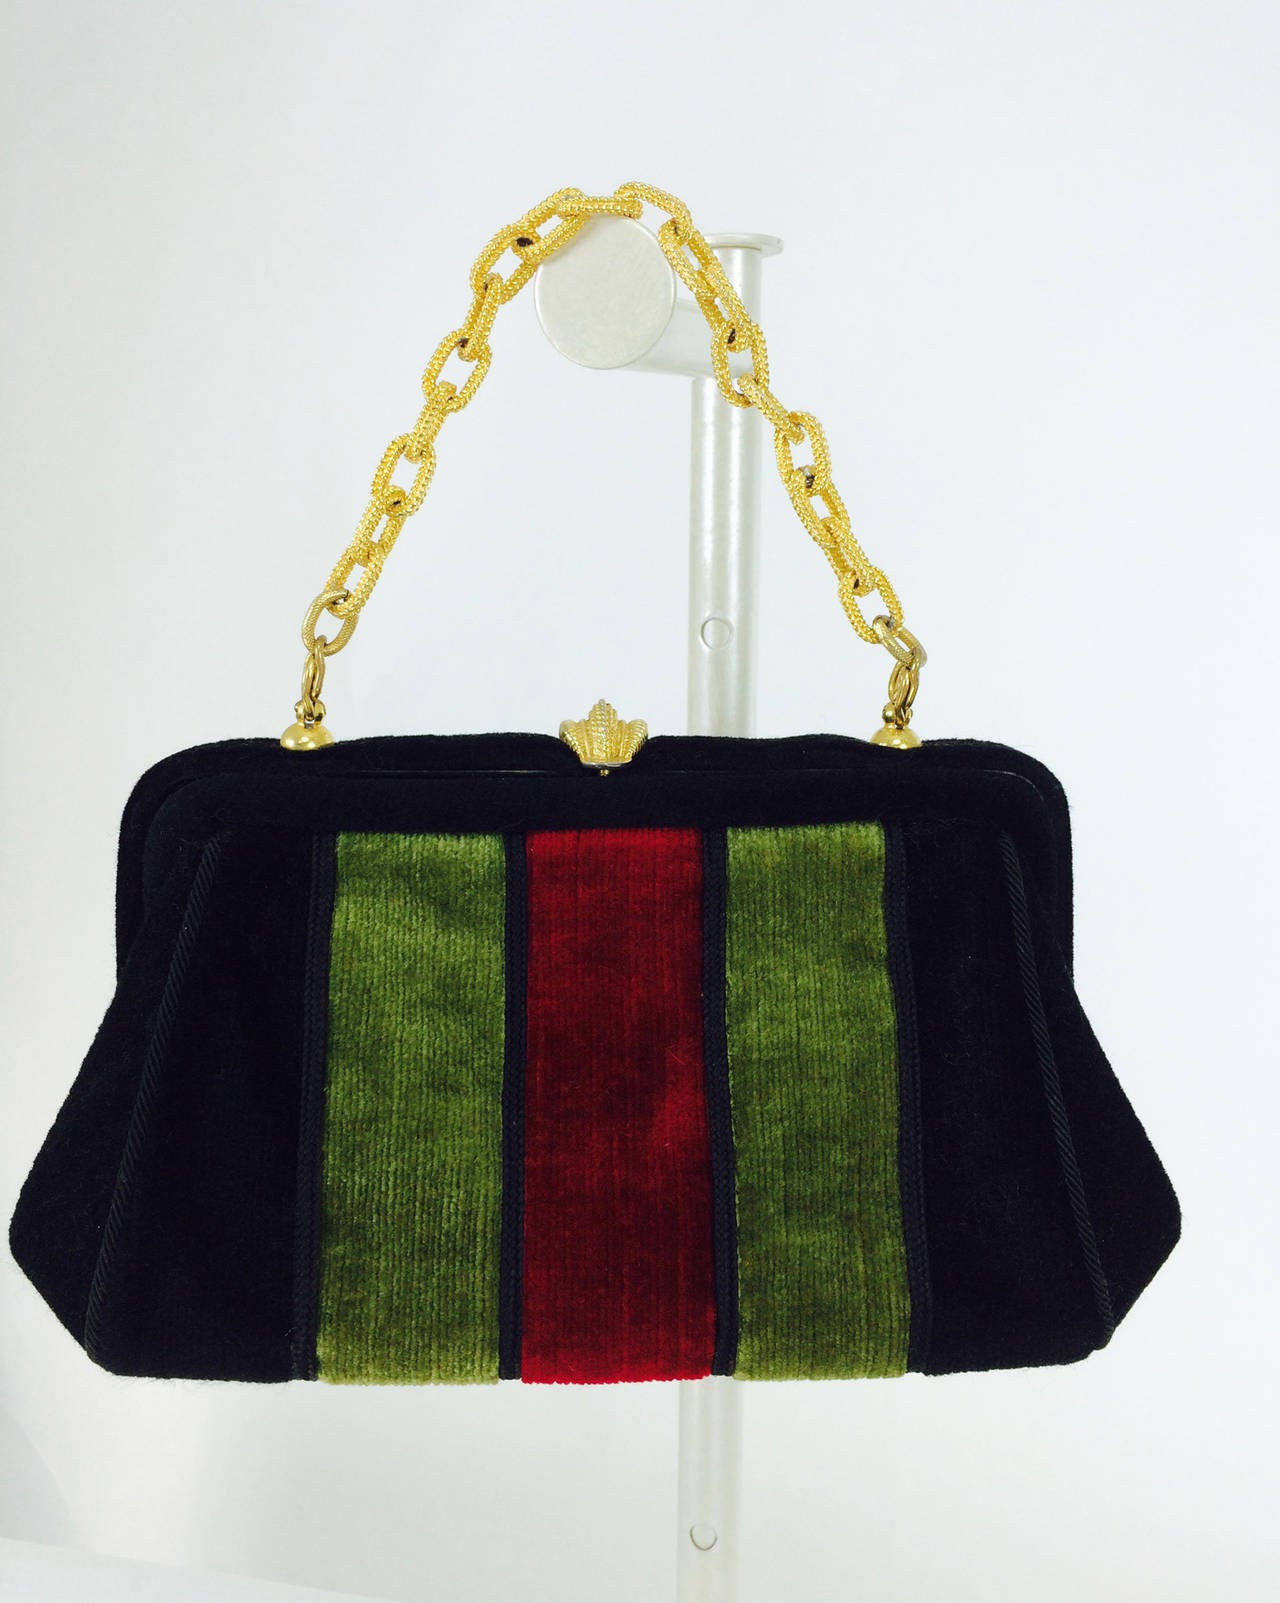 Velvet chain handle bag in red, black & green 1970s 2